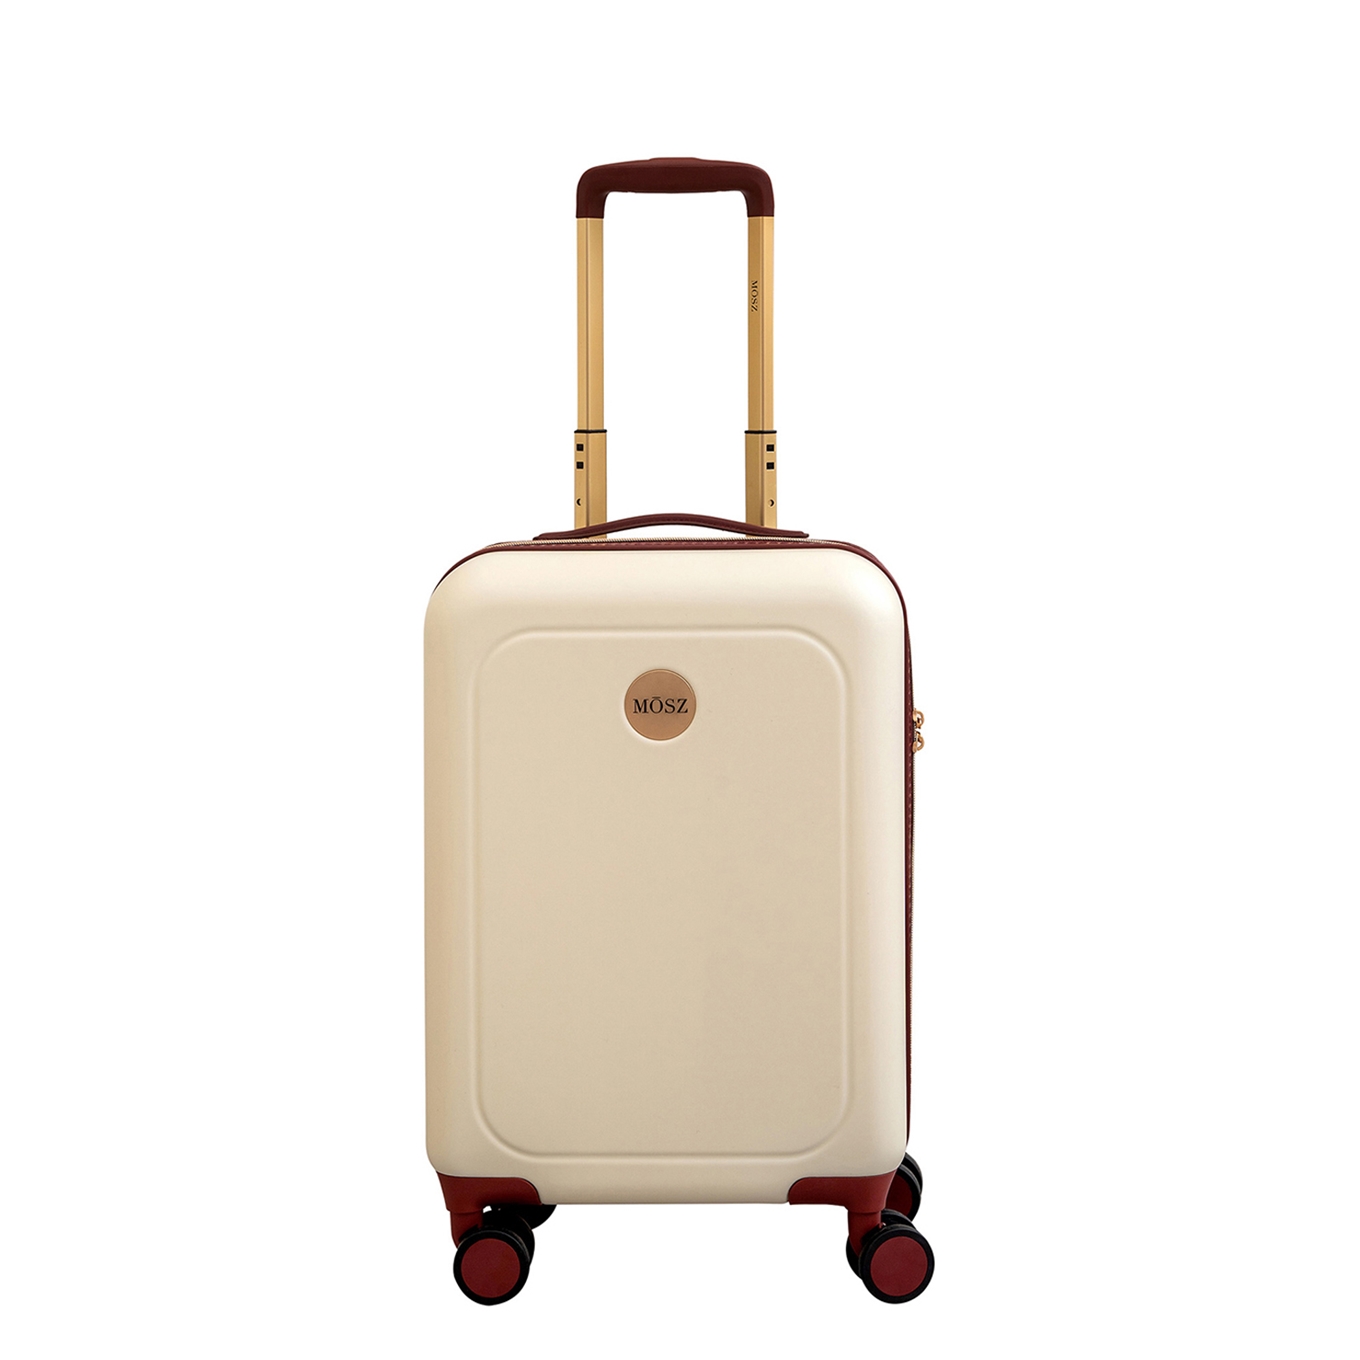 Sobriquette aanbidden Harmonisch Welke koffer moet ik kopen? | Travelbags.nl